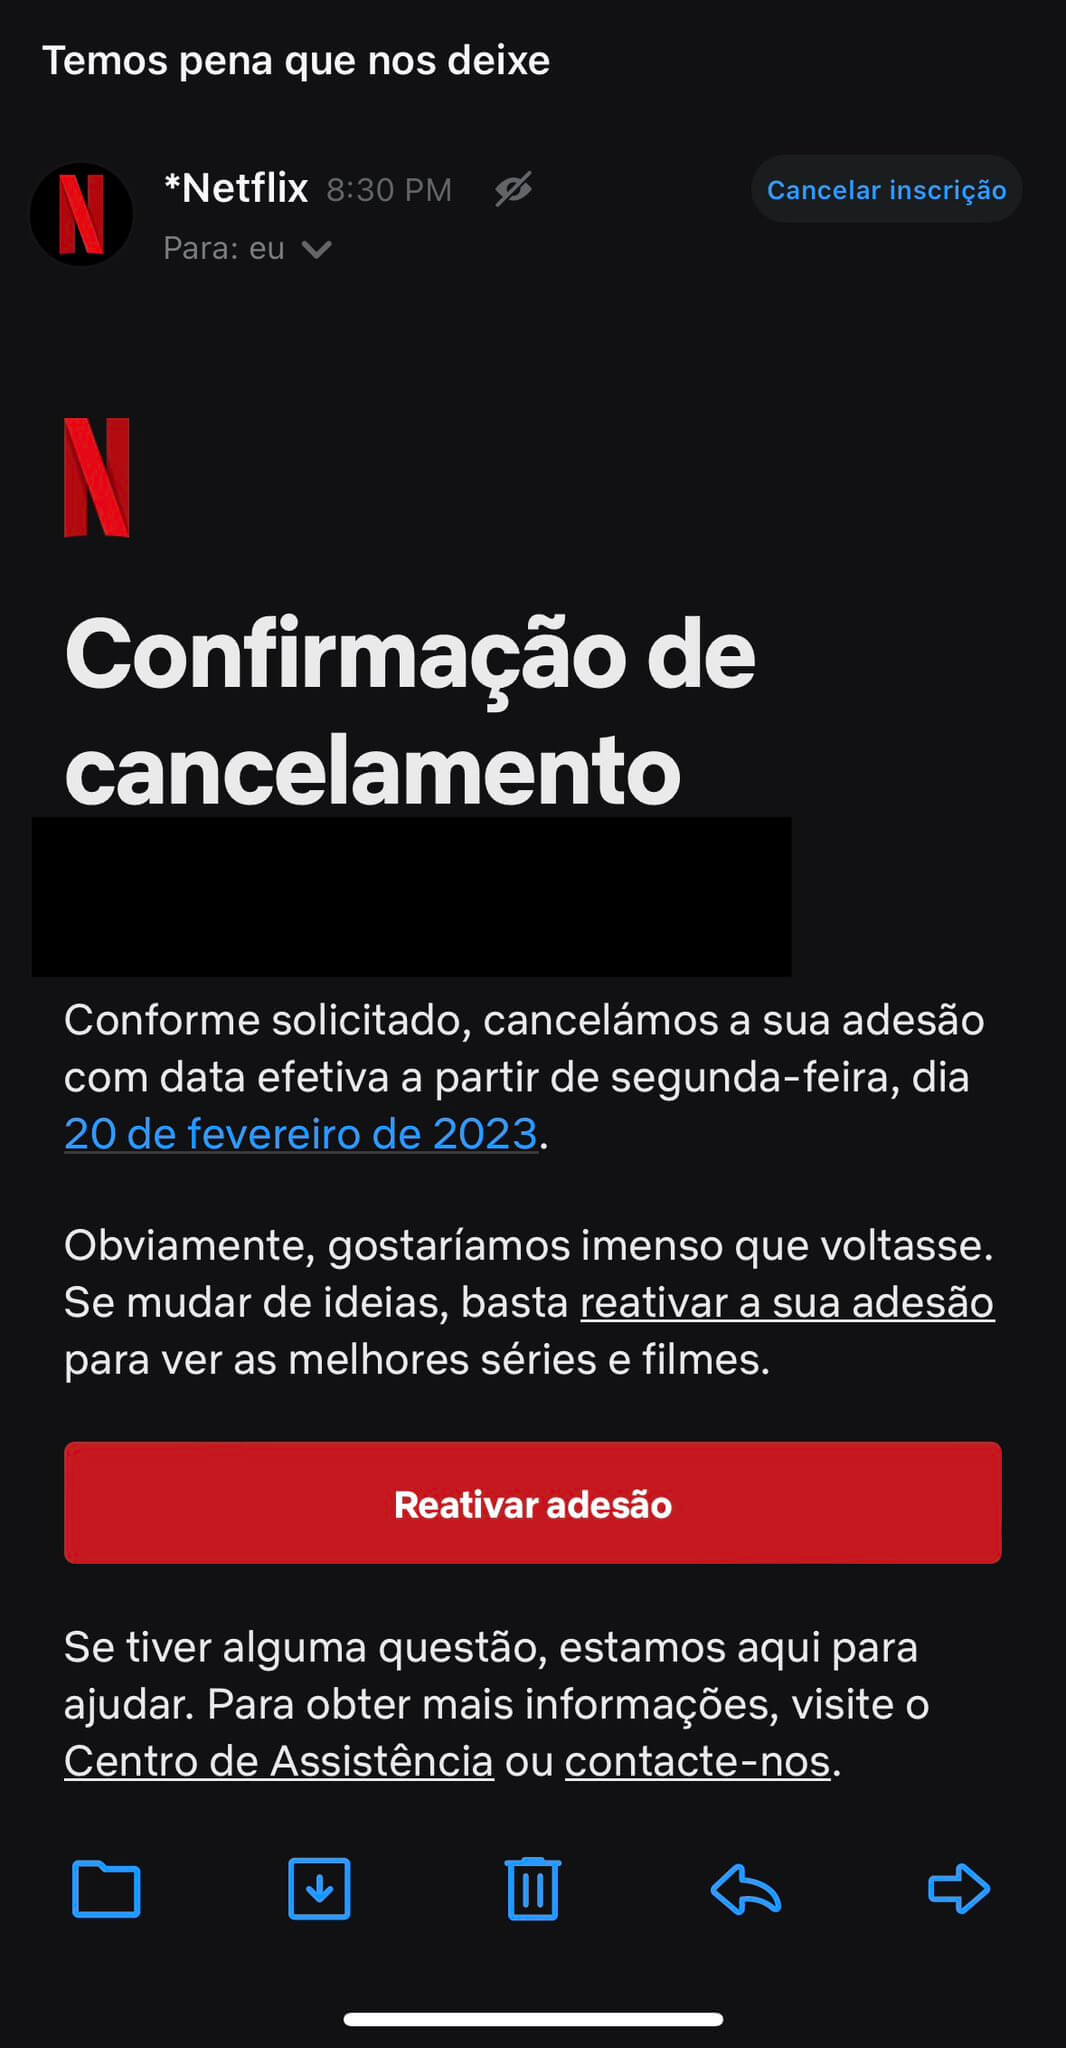 Email Netflix - Reativar adesão